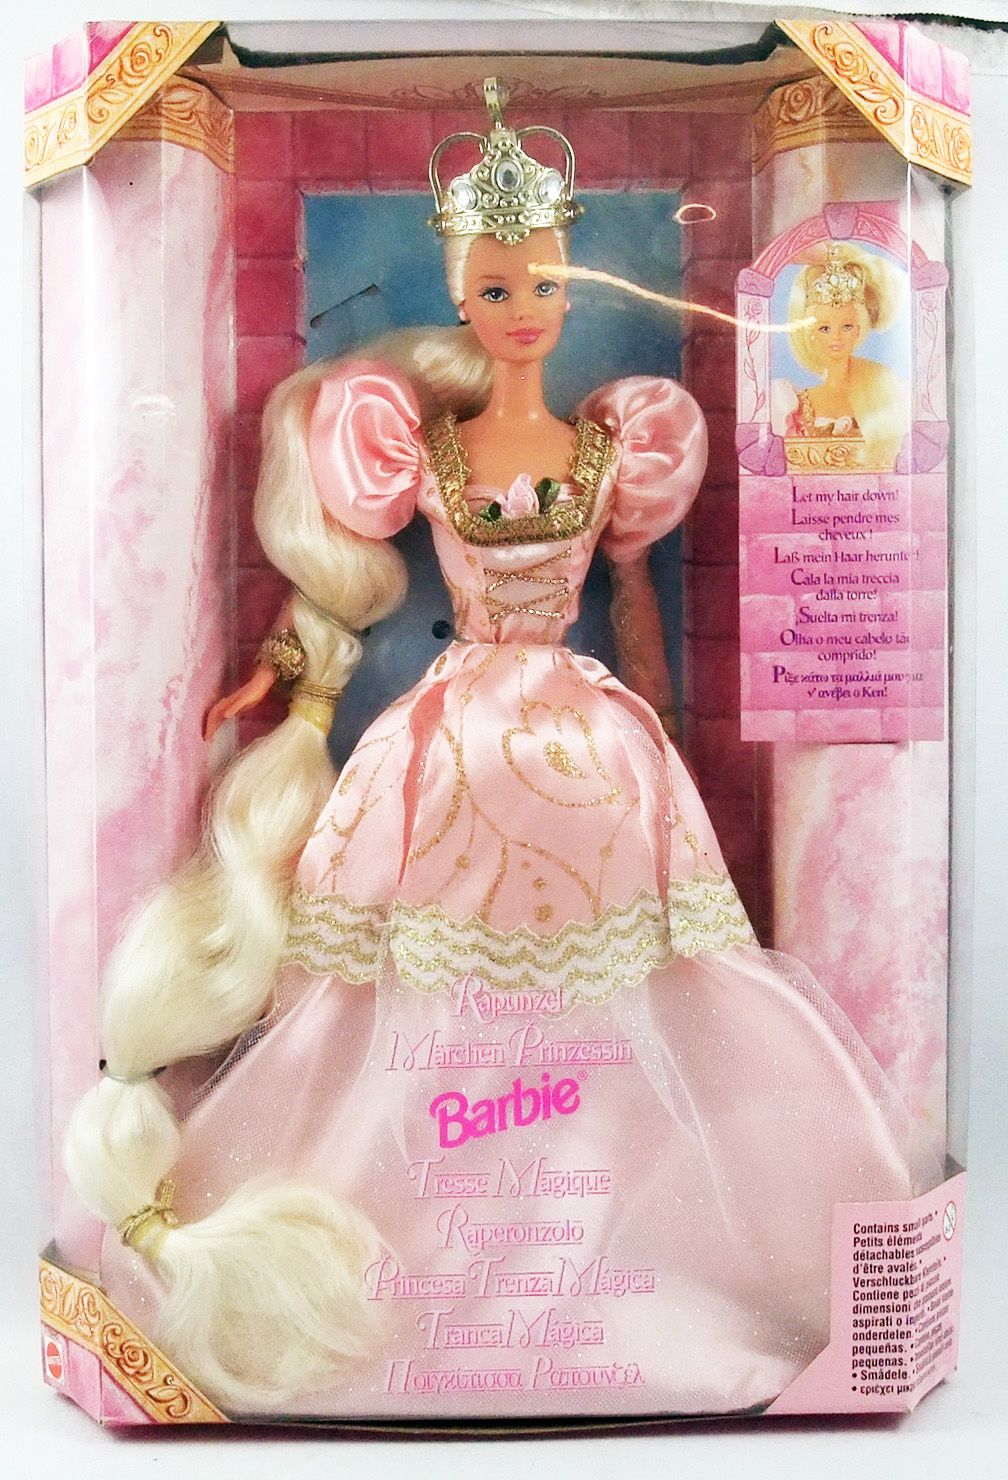 Barbie - poupee tresses magiques, poupees